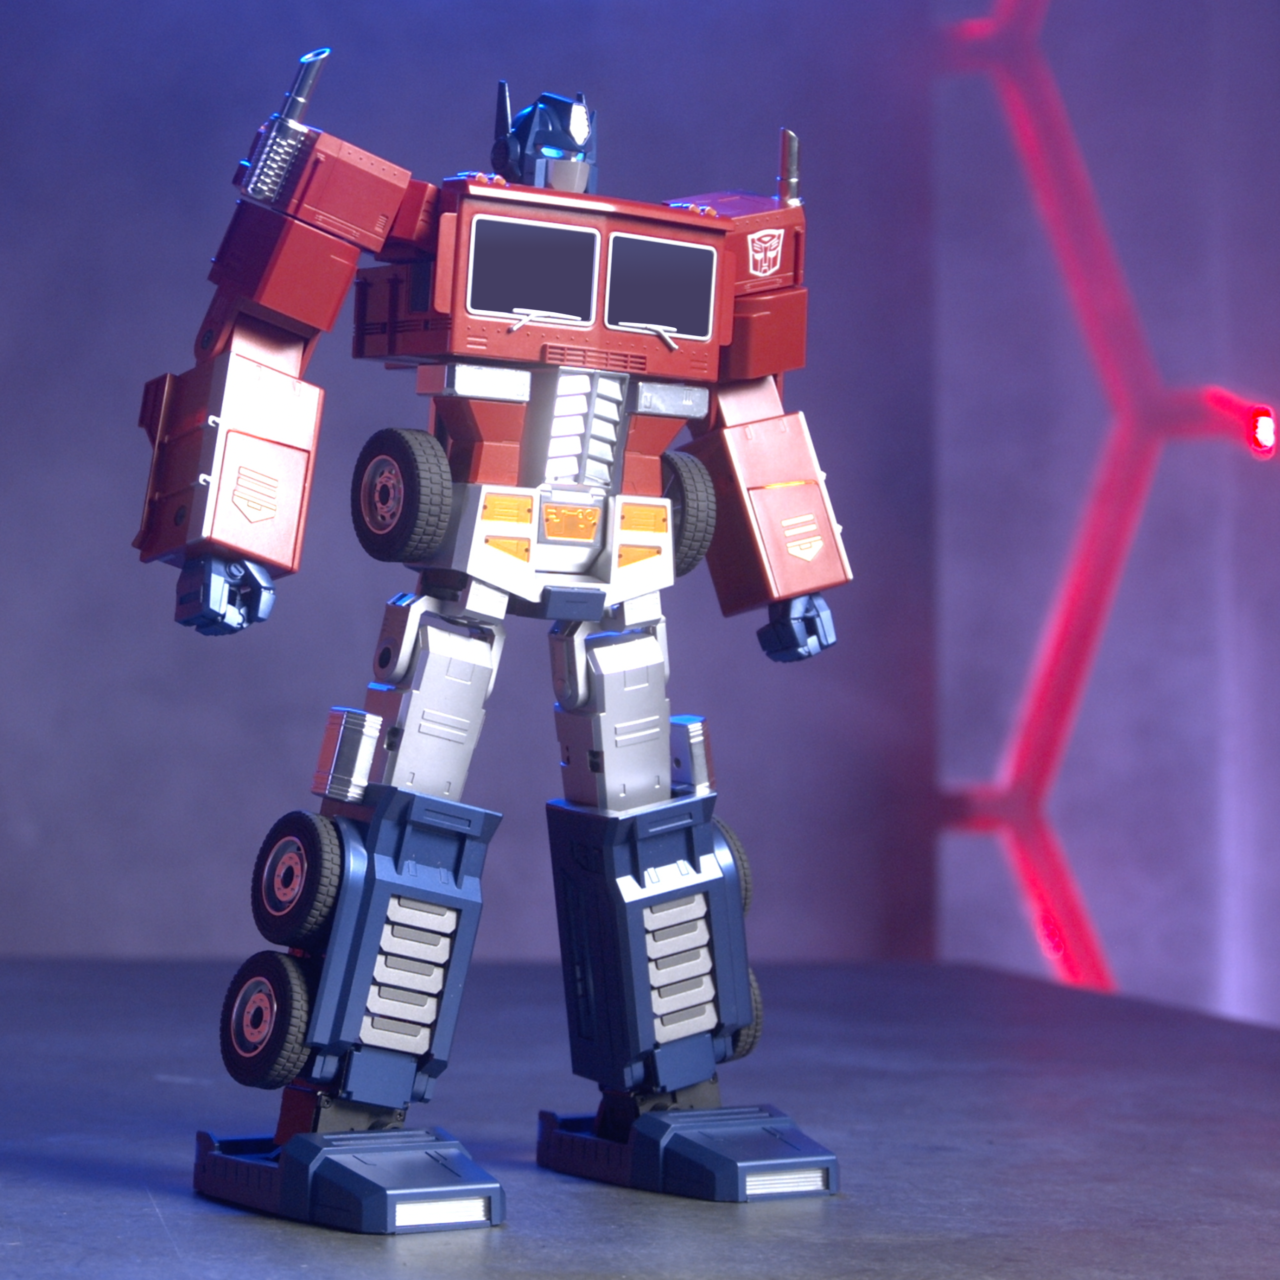 Elite Optimus Prime product image (Robosen Robotics)